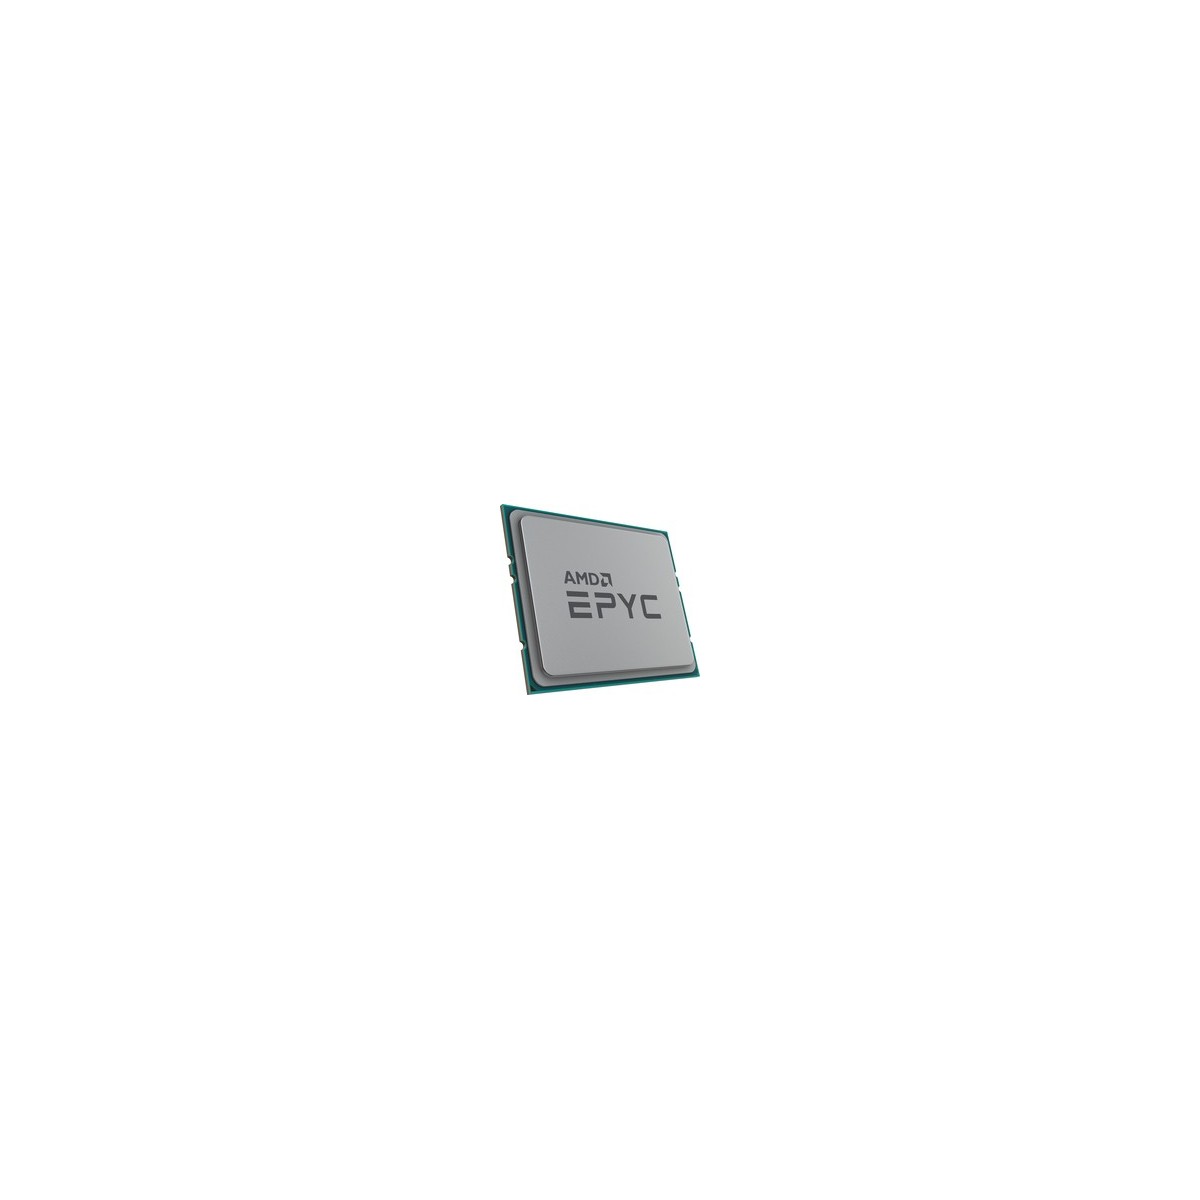 AMD EPYC 7552 AMD EPYC 2.2 GHz